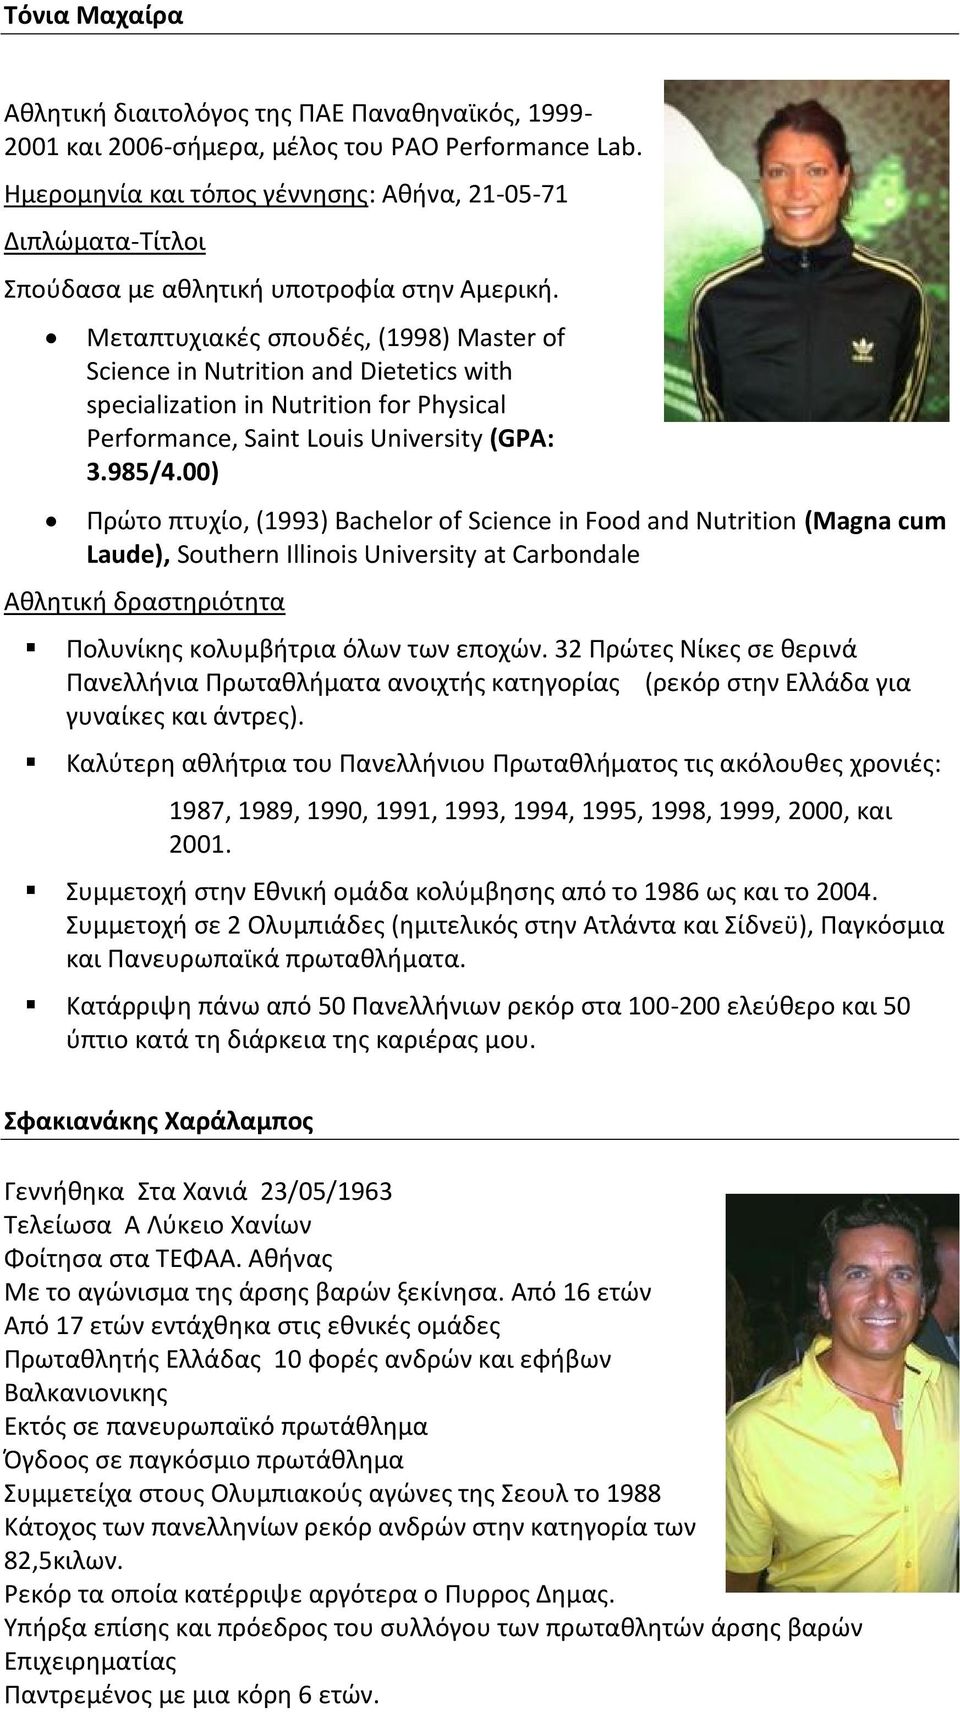 Μεταπτυχιακές σπουδές, (1998) Master of Science in Nutrition and Dietetics with specialization in Nutrition for Physical Performance, Saint Louis University (GPA: 3.985/4.